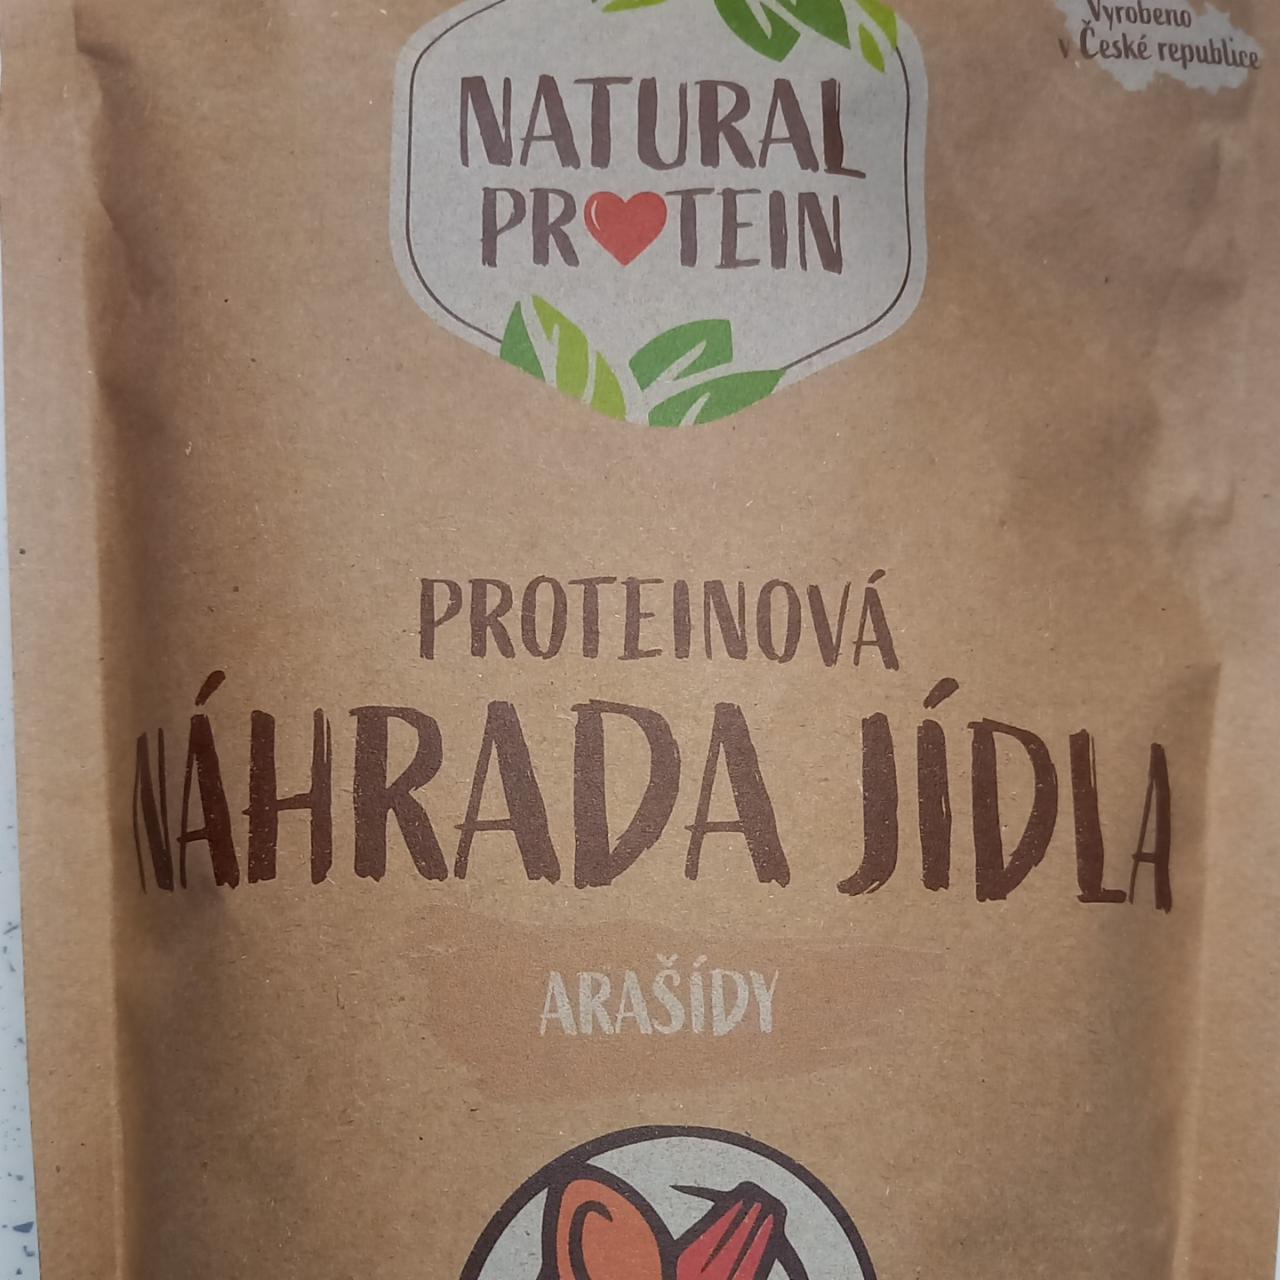 Fotografie - Proteinová náhrada jídla Arašídy Natural protein